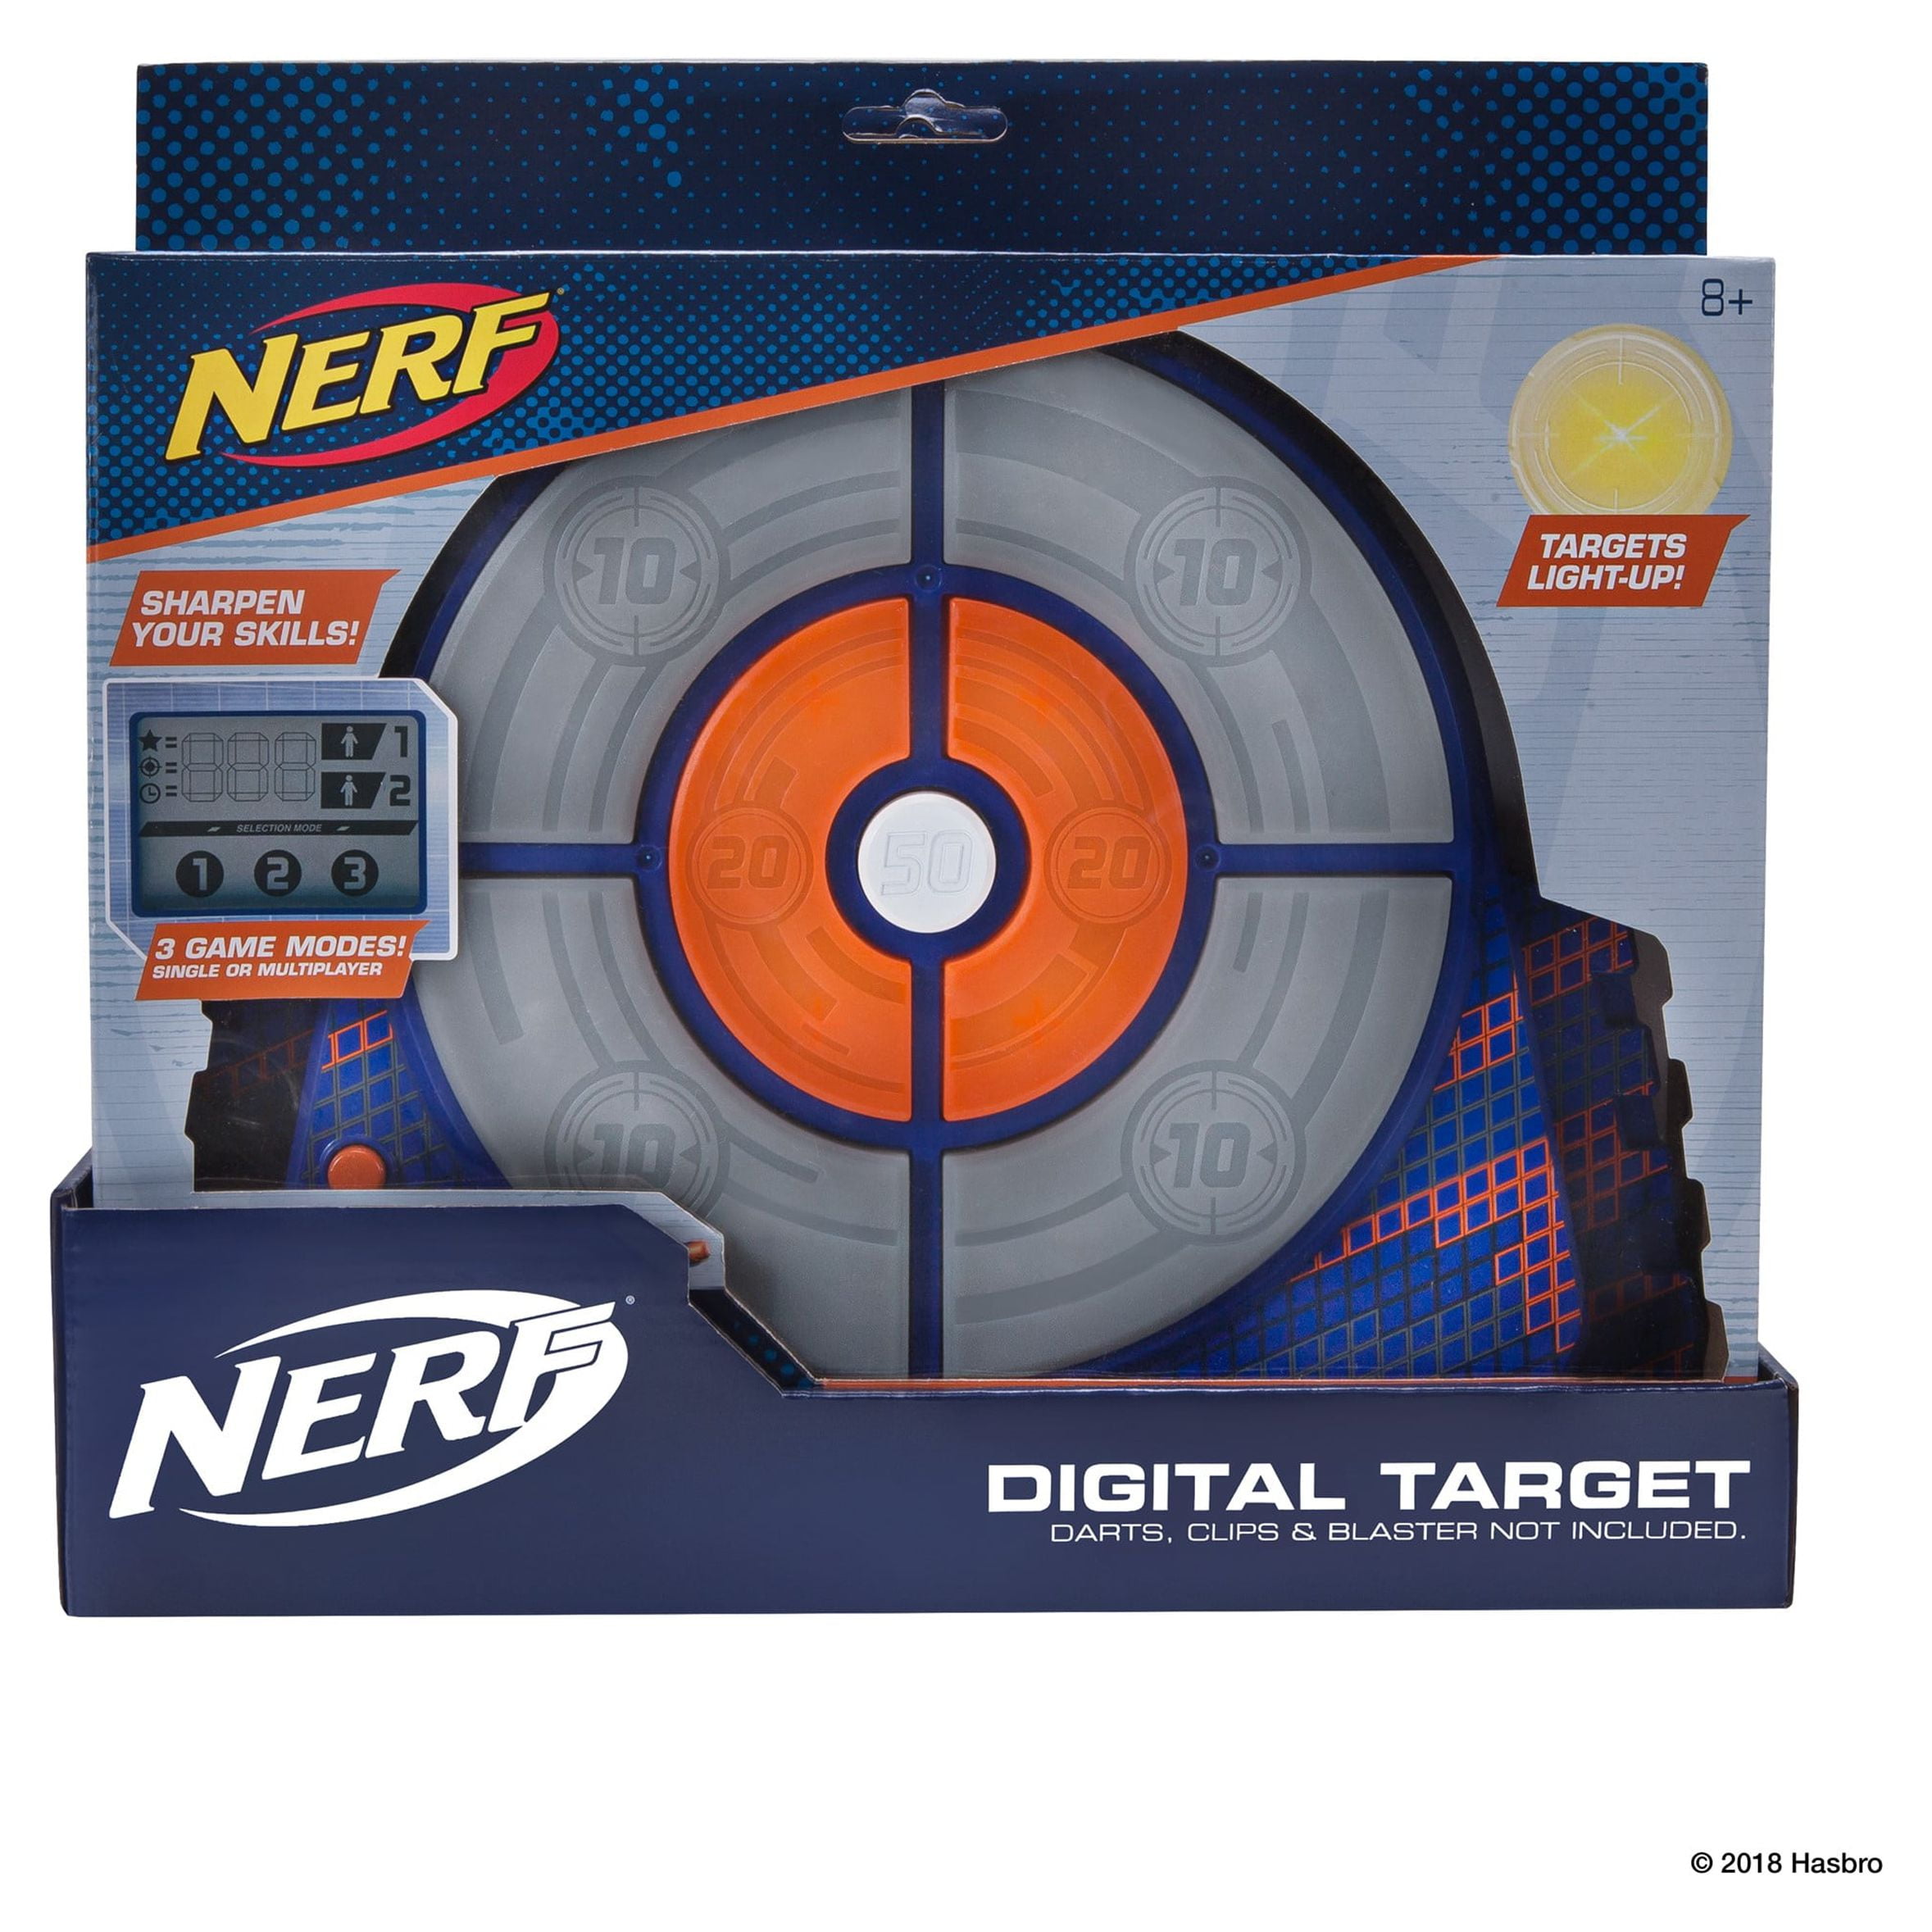 Cibles Nerf Digital Deluxe